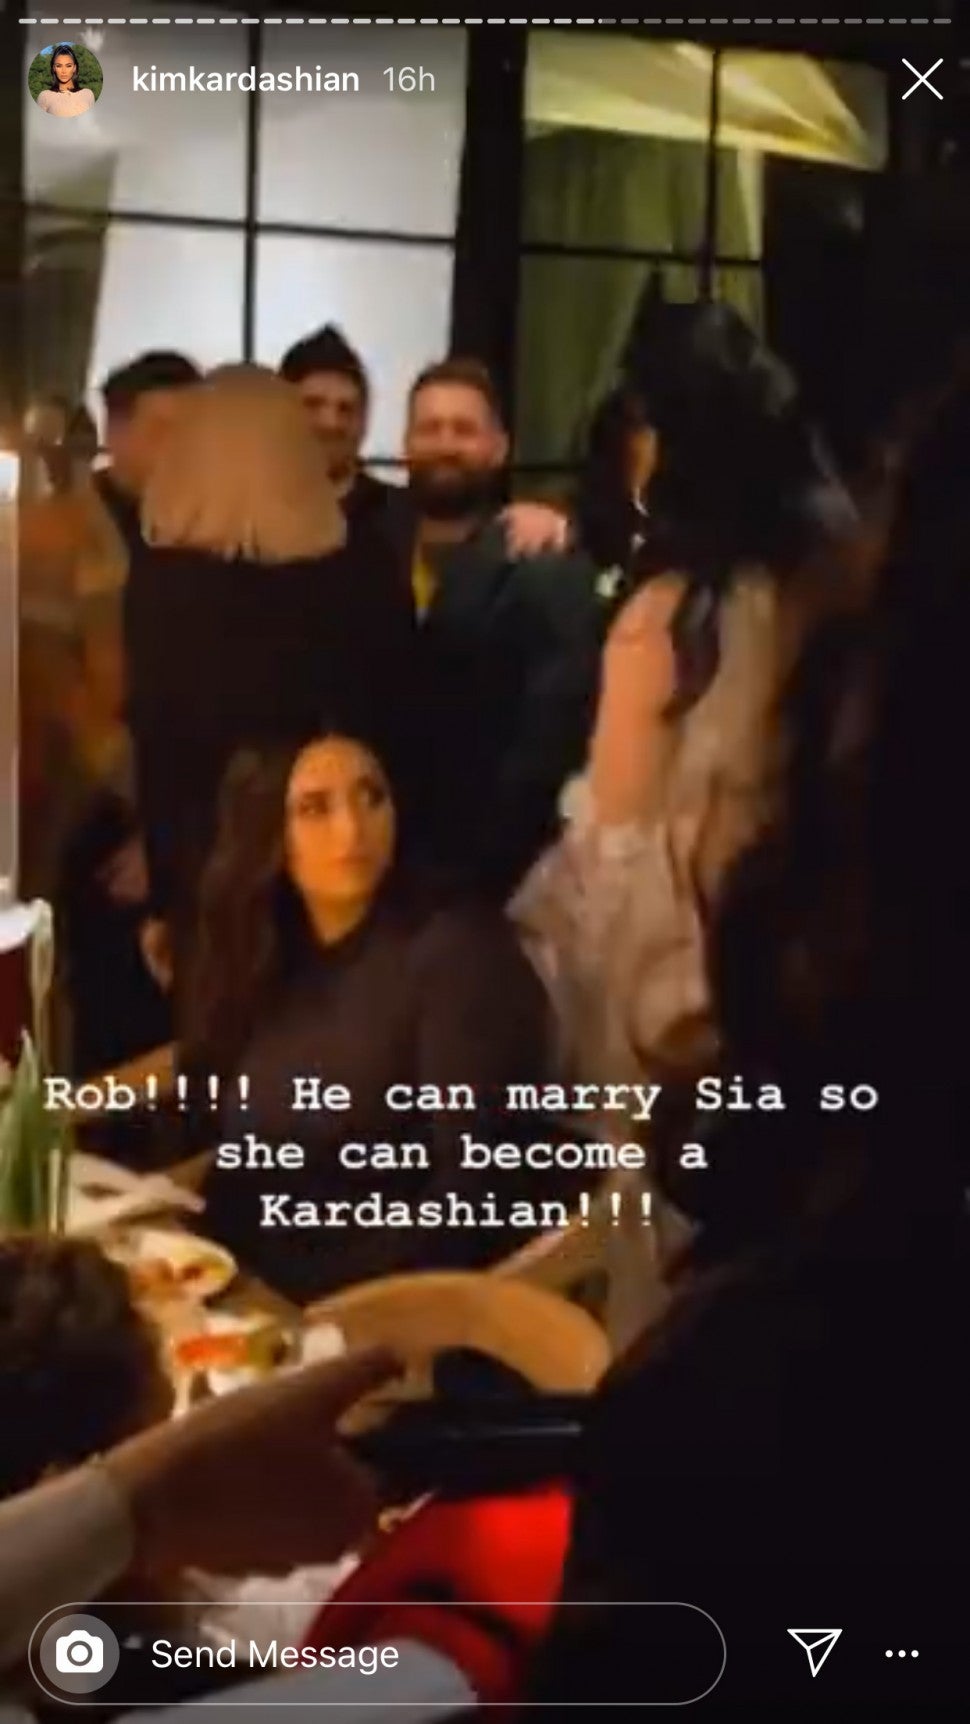 Rob kardashian at xmas party